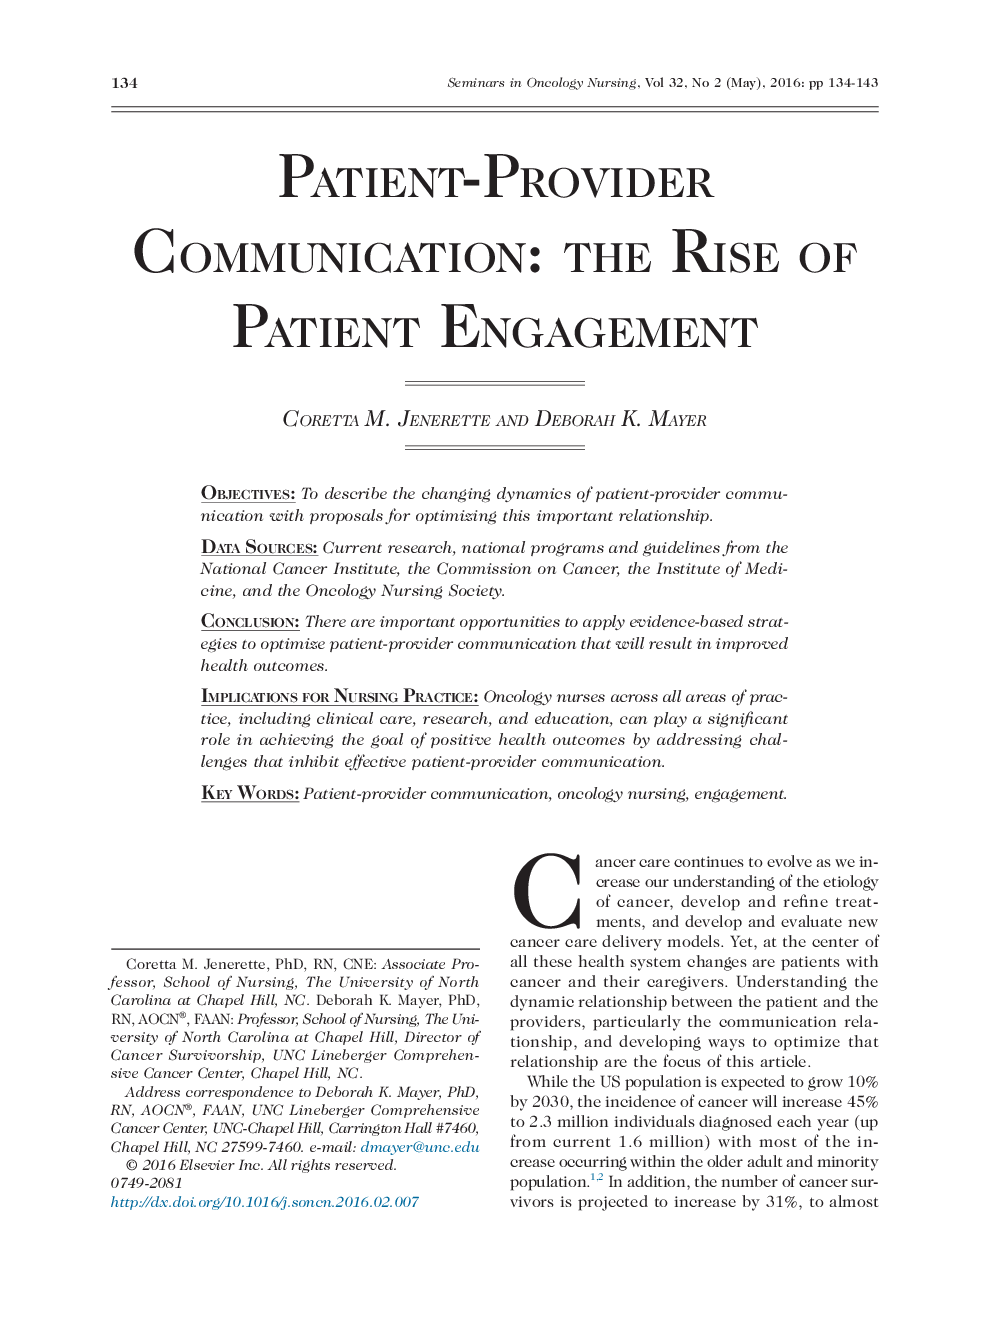 ارتباط ارائه دهنده خدمات و بیمار: ظهور تعامل بیمار